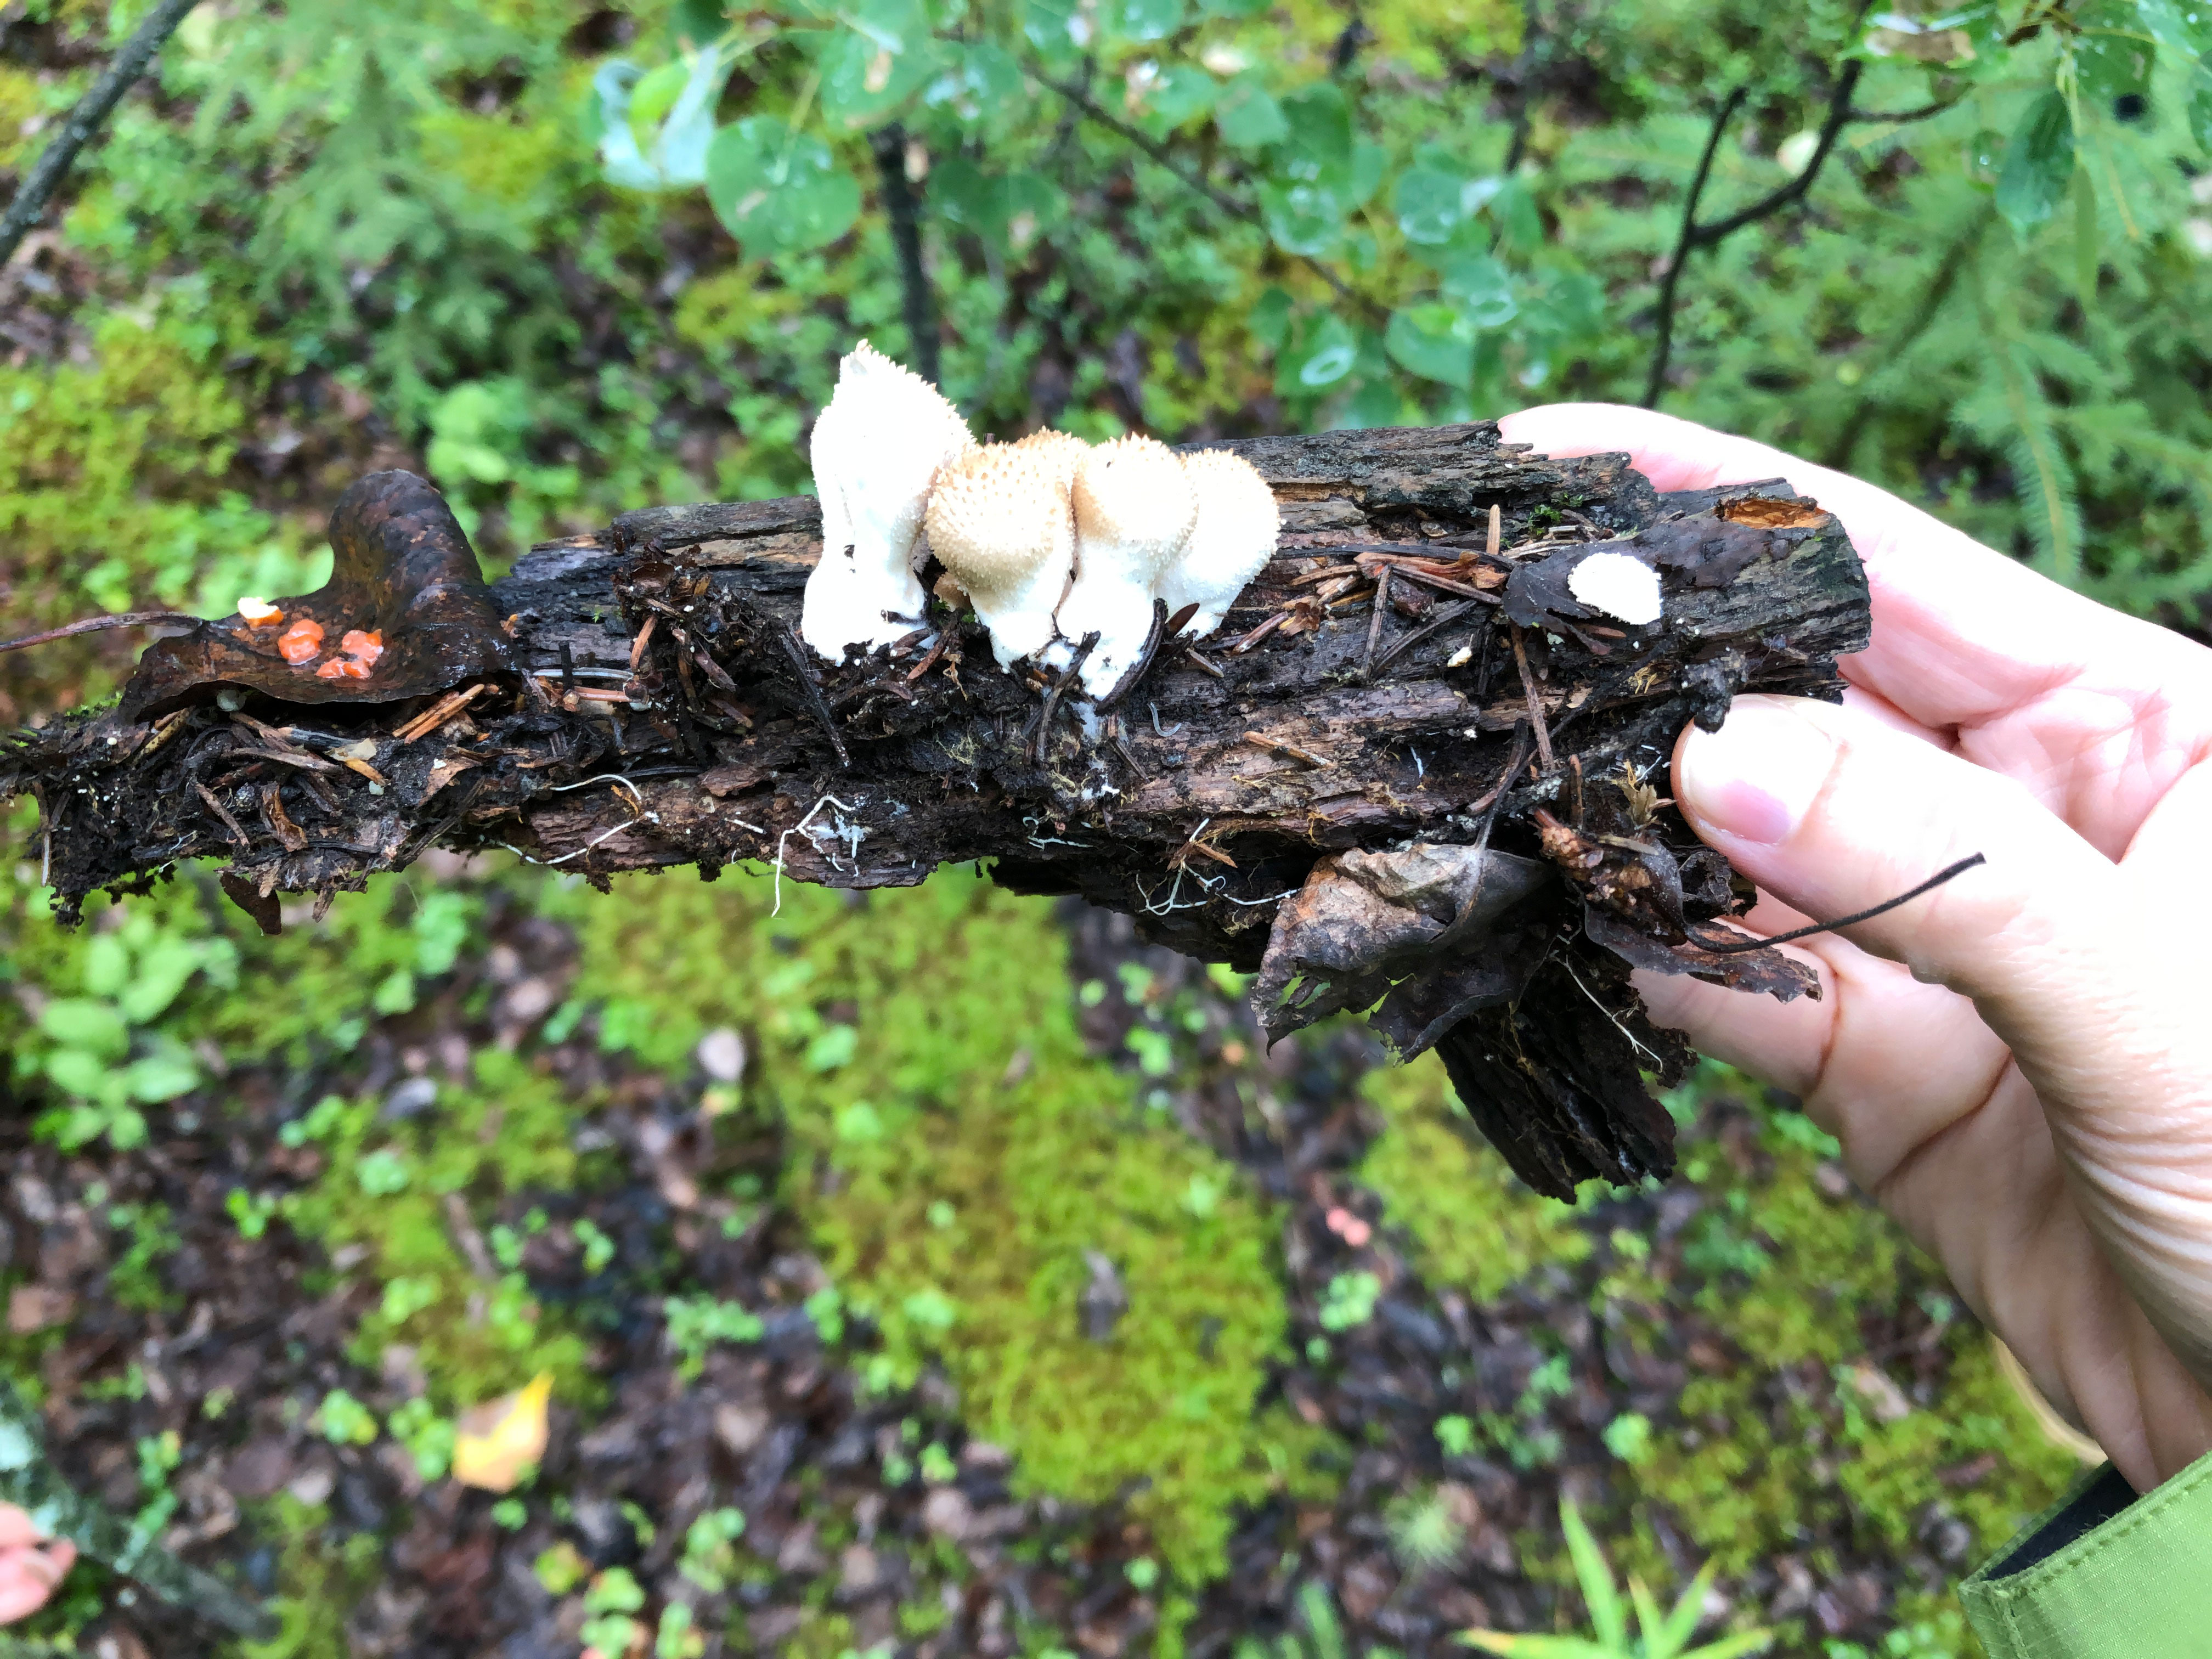 Mushroom being held up